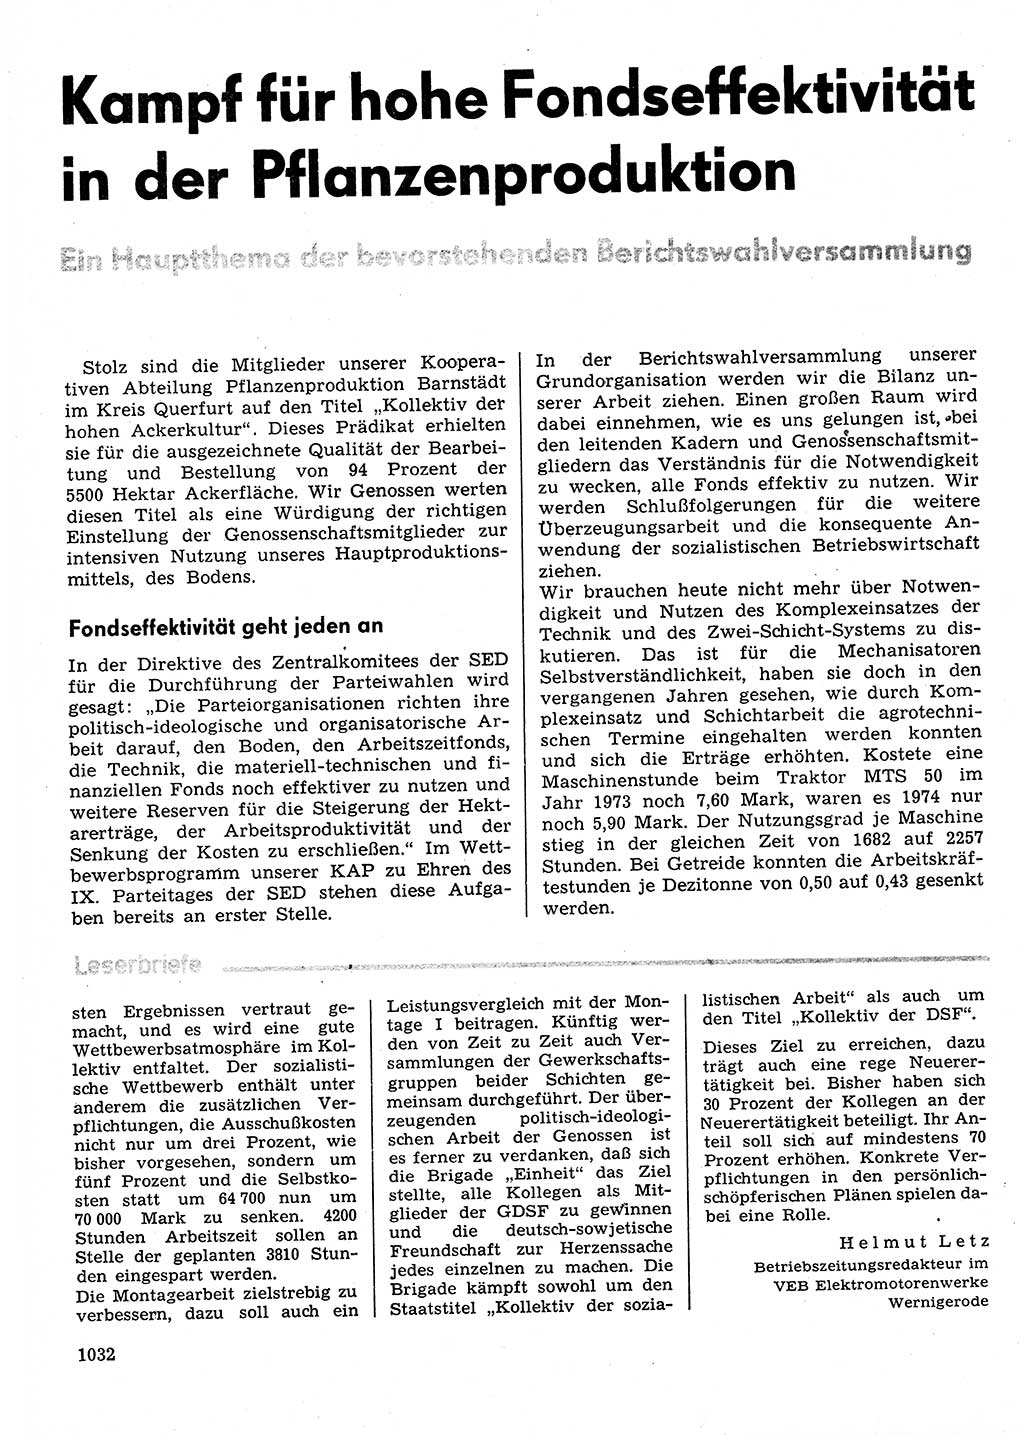 Neuer Weg (NW), Organ des Zentralkomitees (ZK) der SED (Sozialistische Einheitspartei Deutschlands) für Fragen des Parteilebens, 30. Jahrgang [Deutsche Demokratische Republik (DDR)] 1975, Seite 1032 (NW ZK SED DDR 1975, S. 1032)